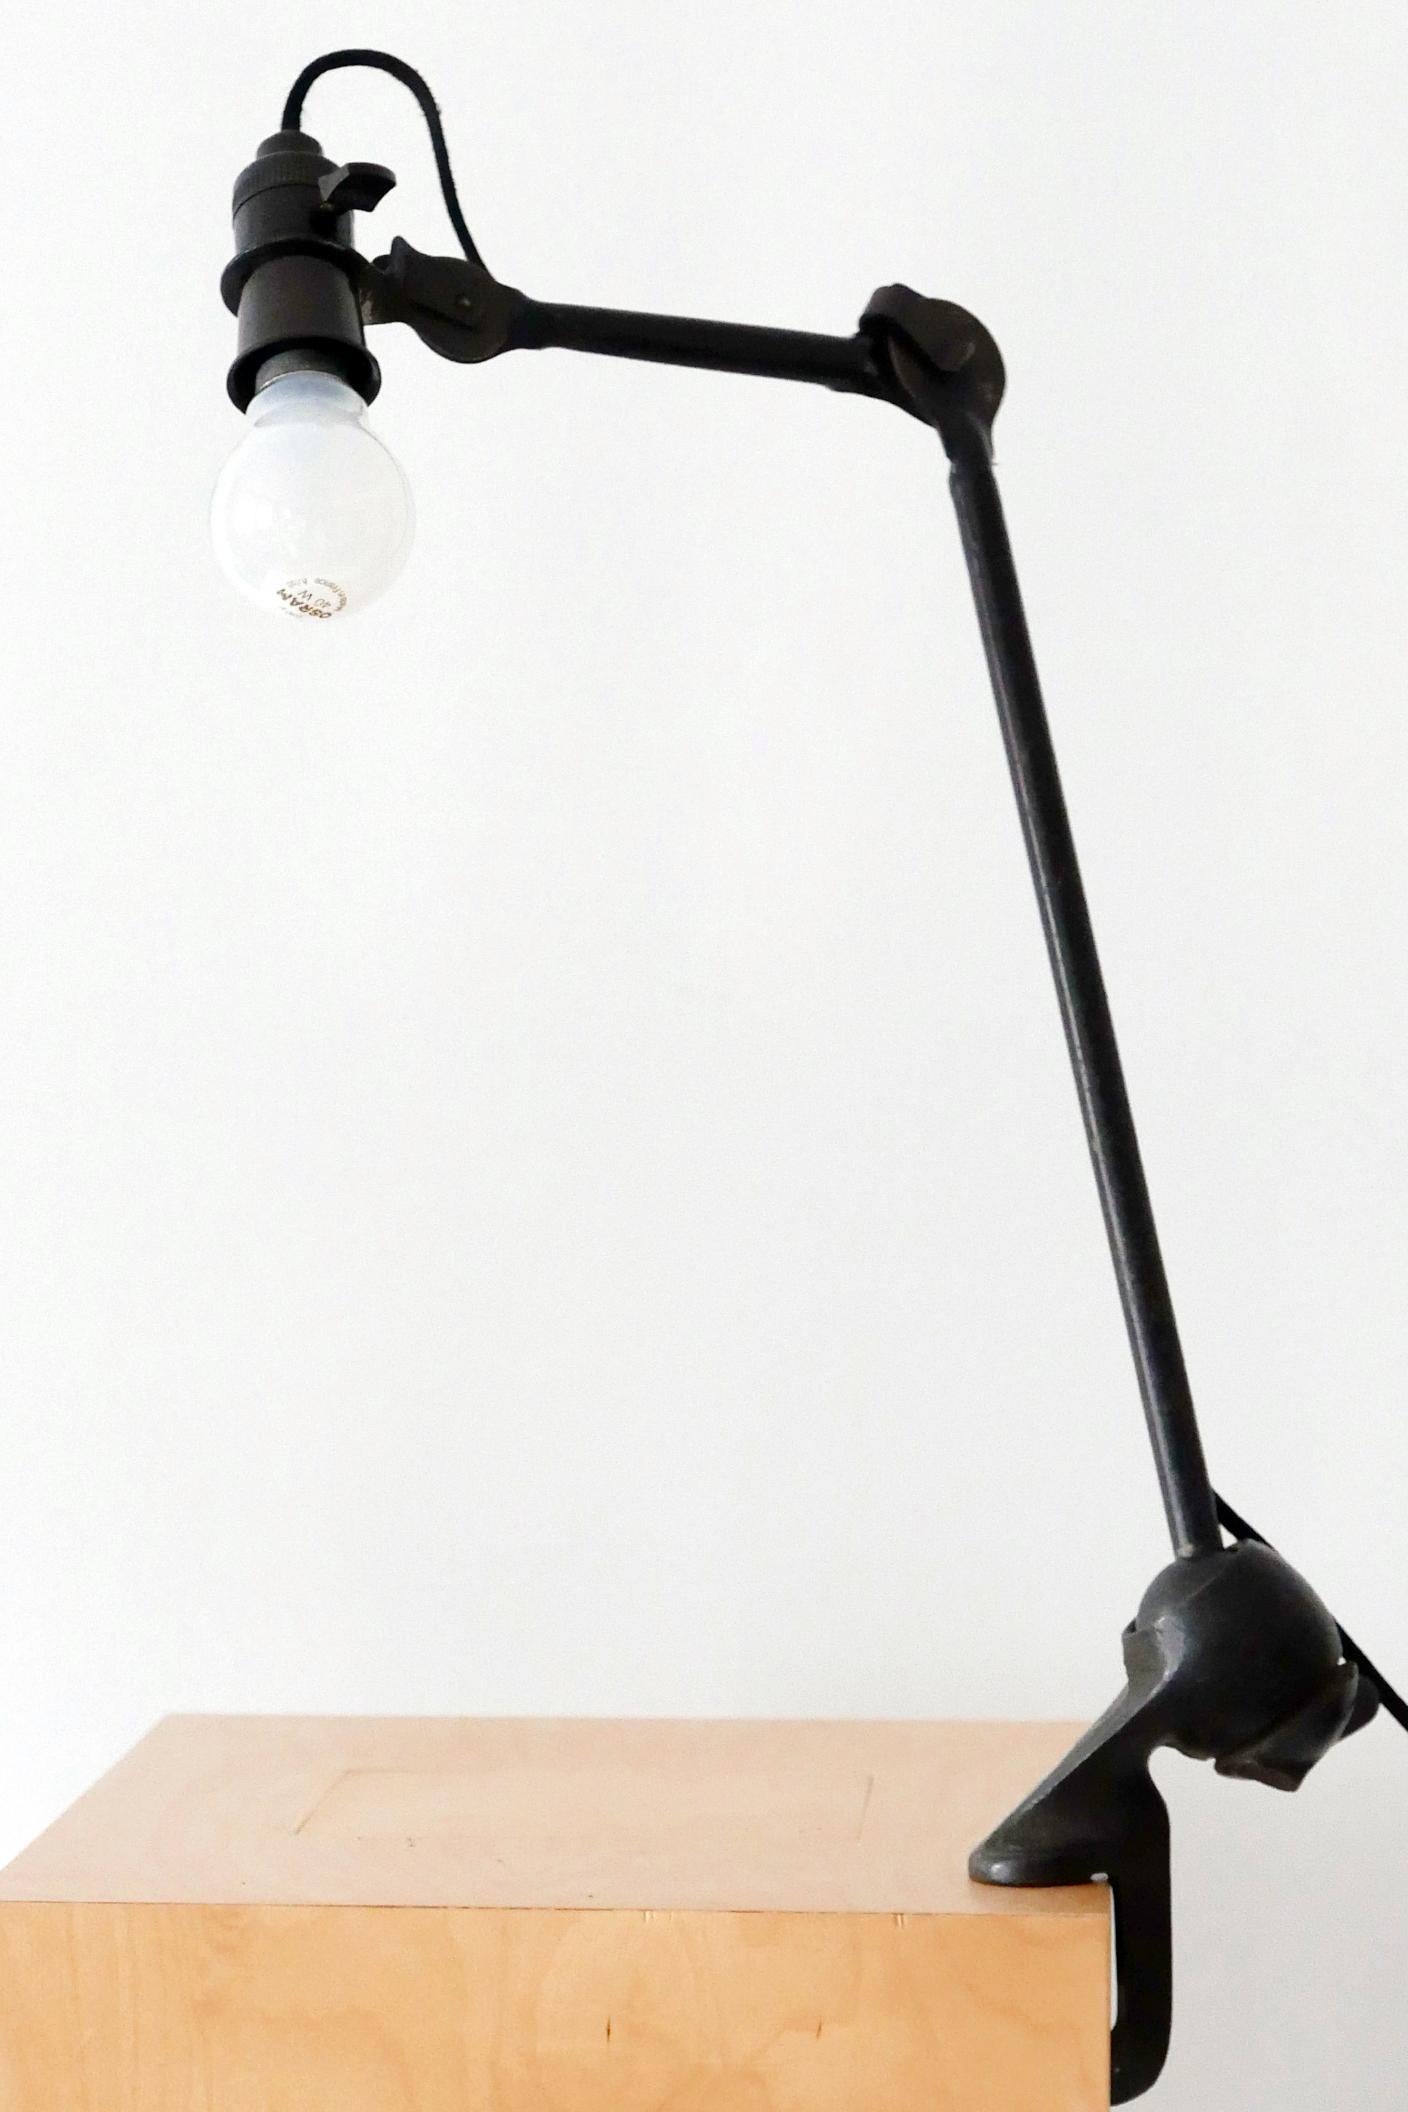 Modernist Task Light or Clamp Table Lamp by Bernard-Albin Gras for Gras, 1920s For Sale 5